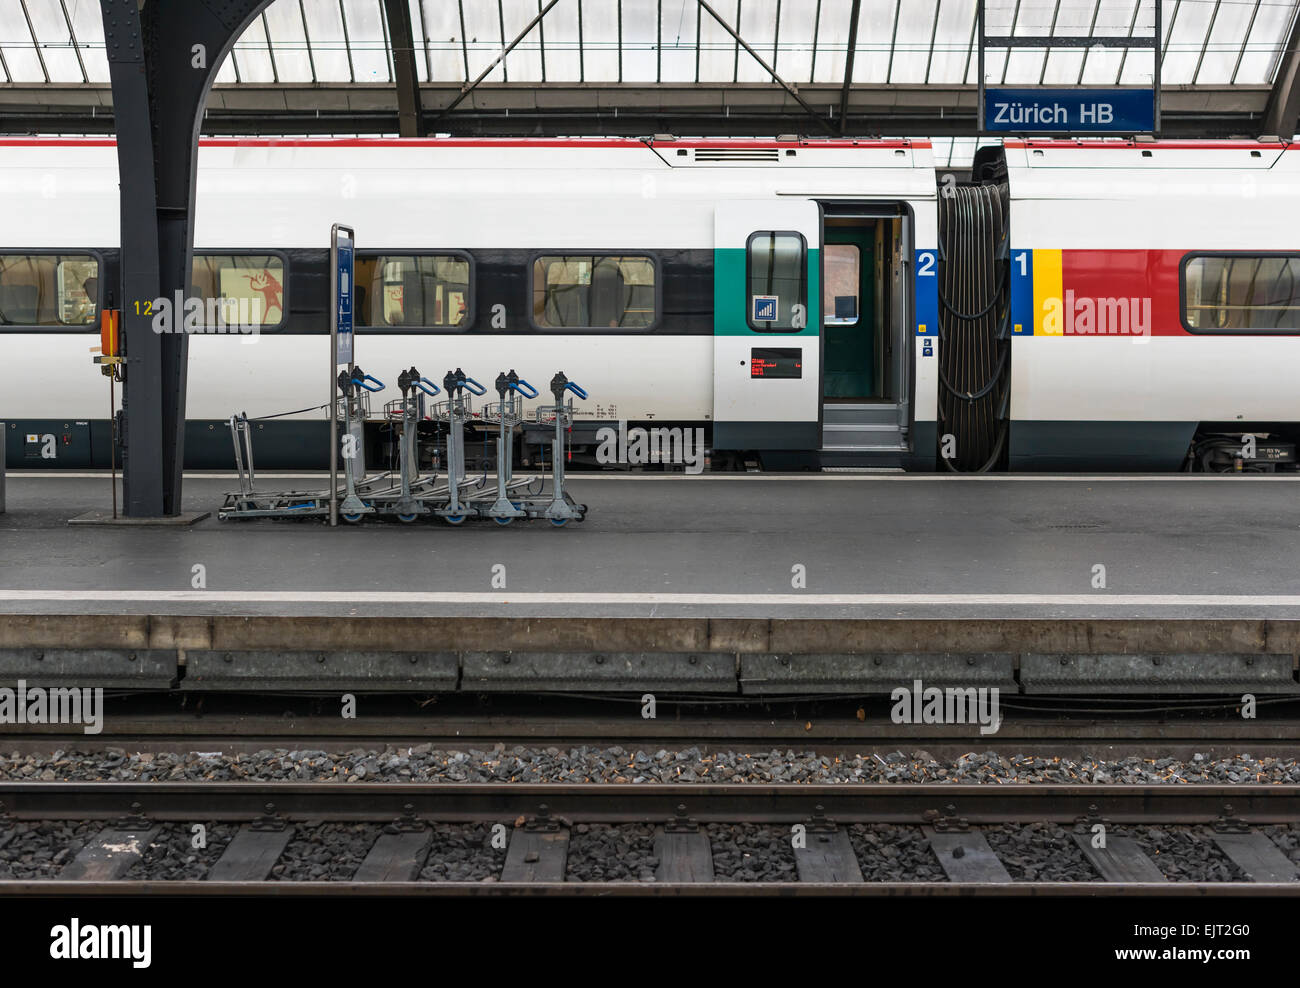 Un treno delle FFS, federale della Svizzera operatore ferroviario è in attesa con le porte aperte su una piattaforma della stazione principale di Zurigo. Foto Stock